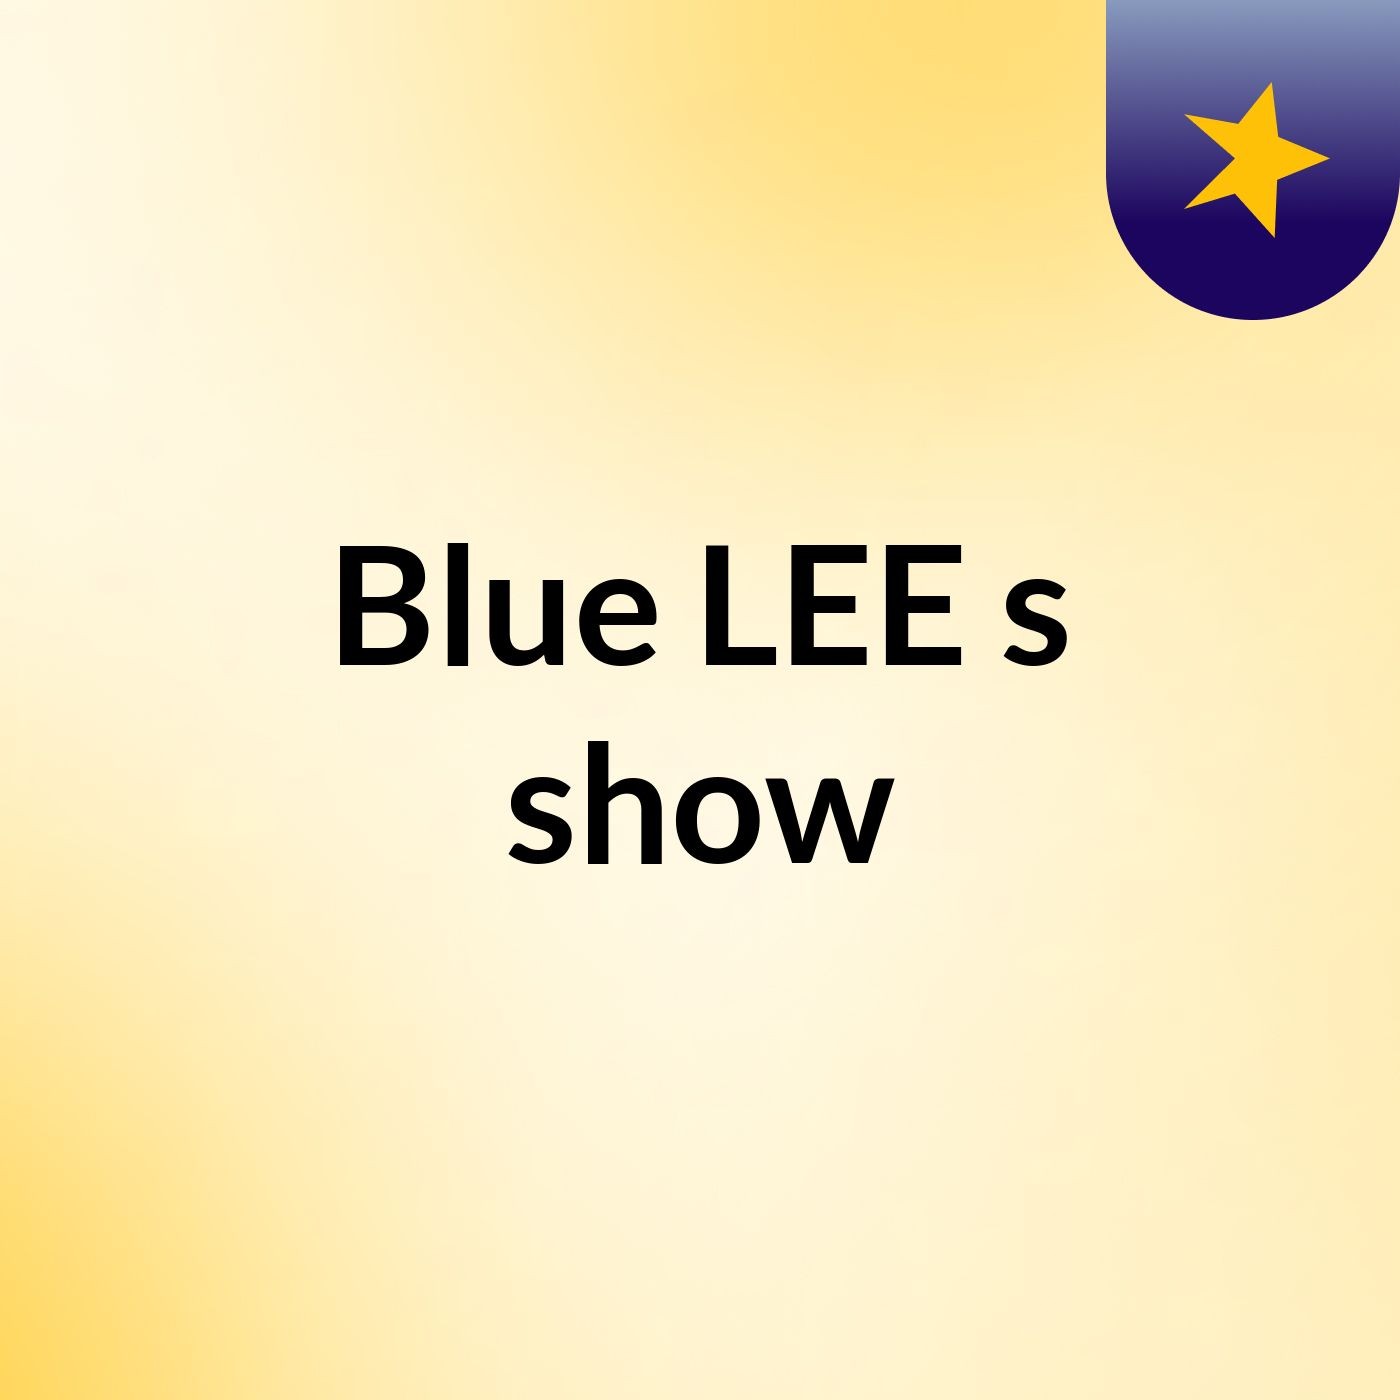 Blue LEE's show